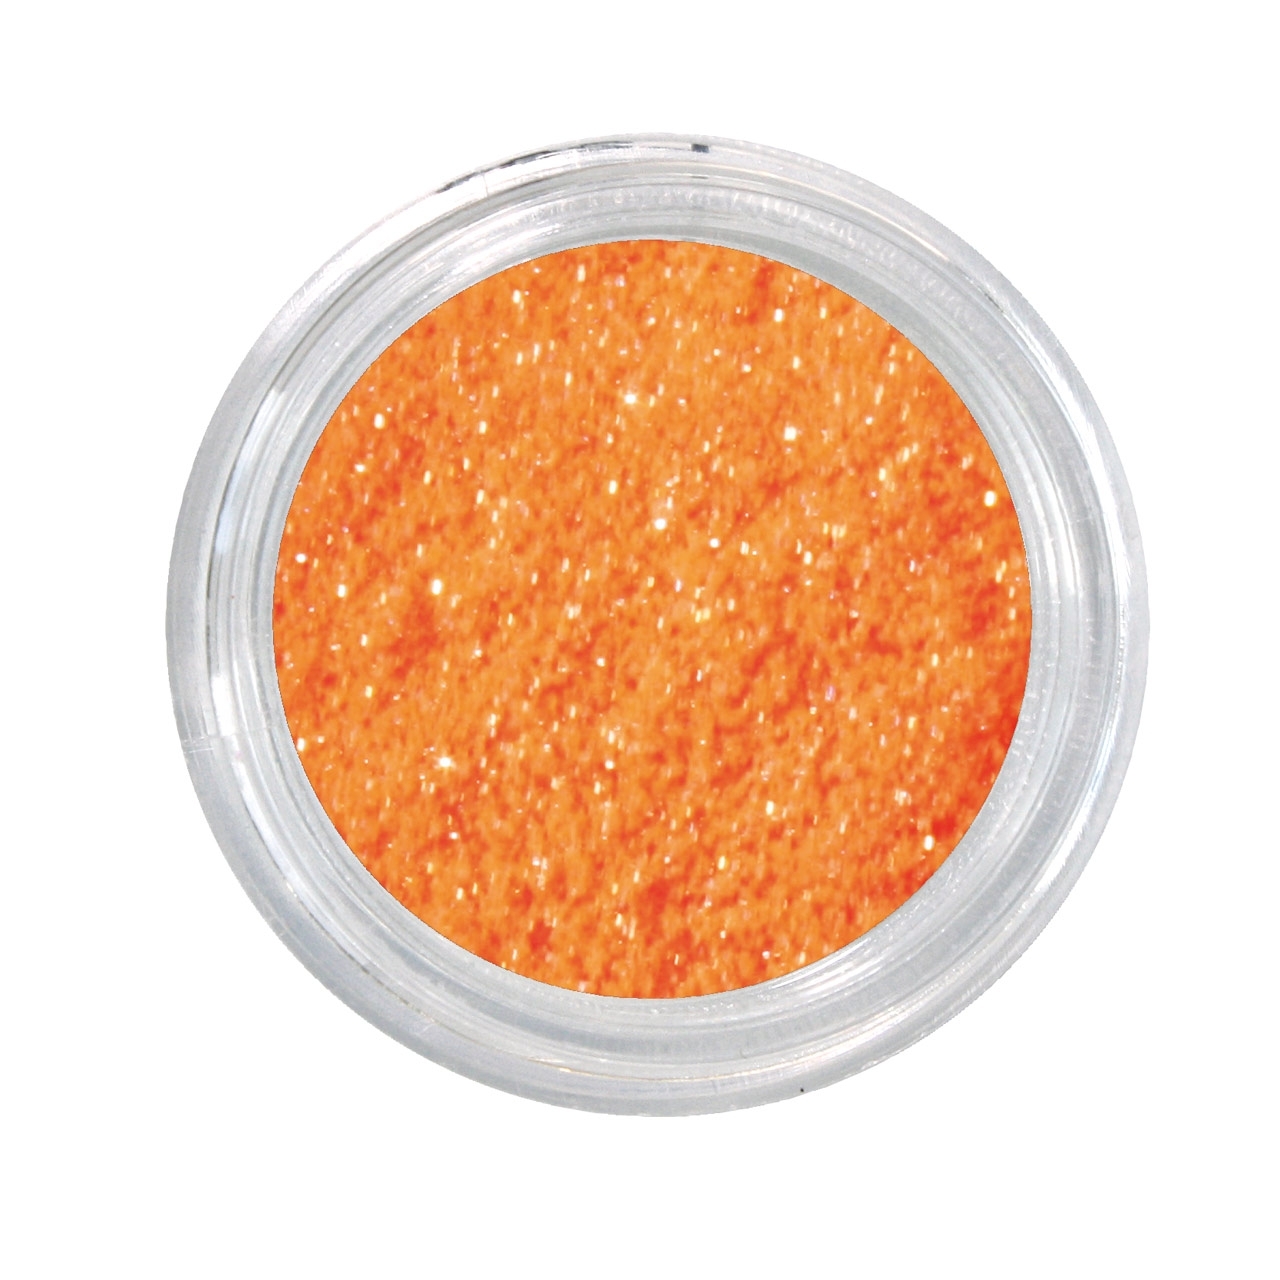 BAEHR BEAUTY CONCEPT NAILS Nail Art Glitterpulver orange